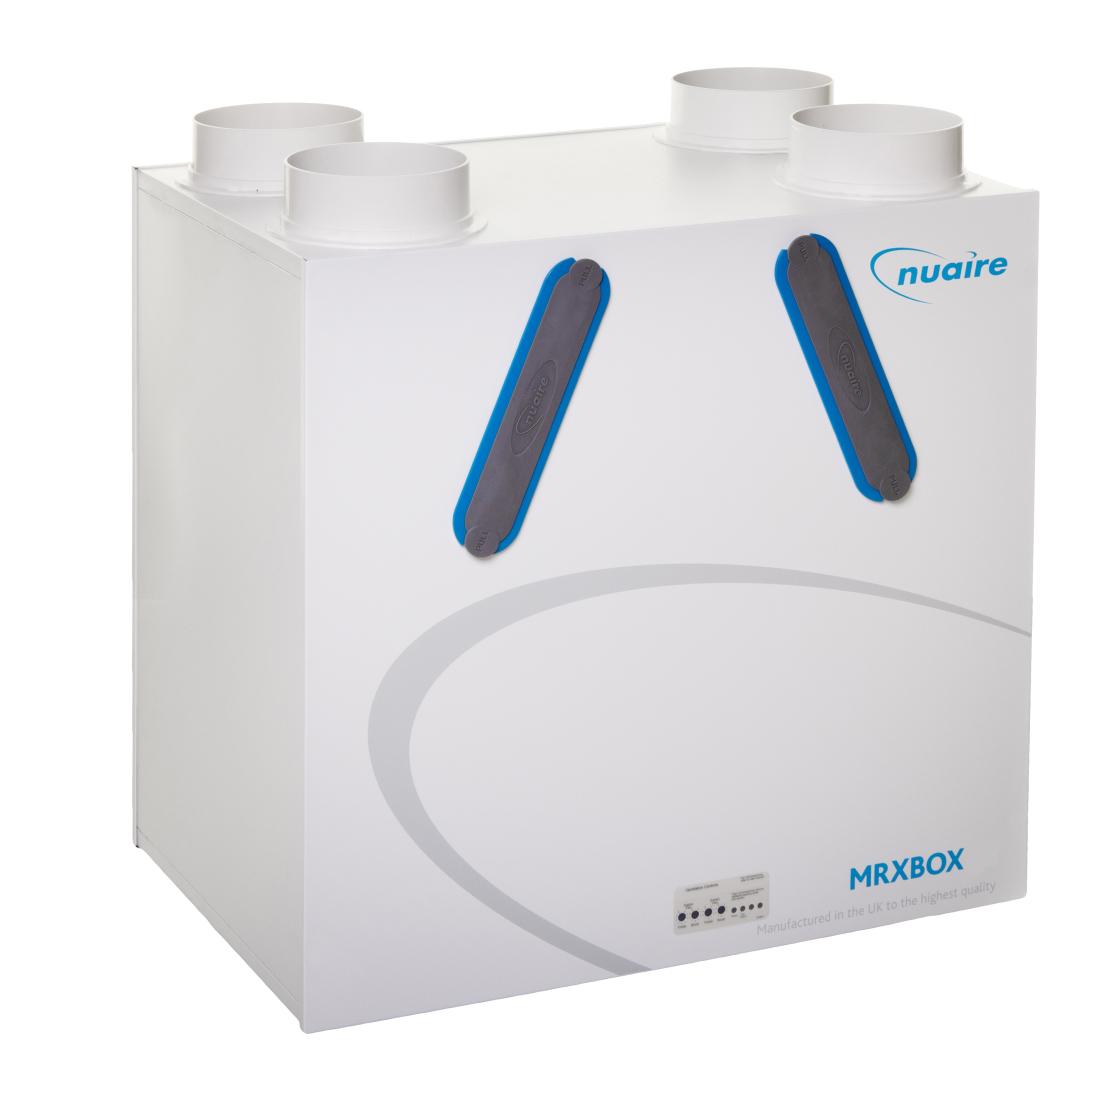 Nuaire MRXBOXAB-ECO3 Heat Recovery System